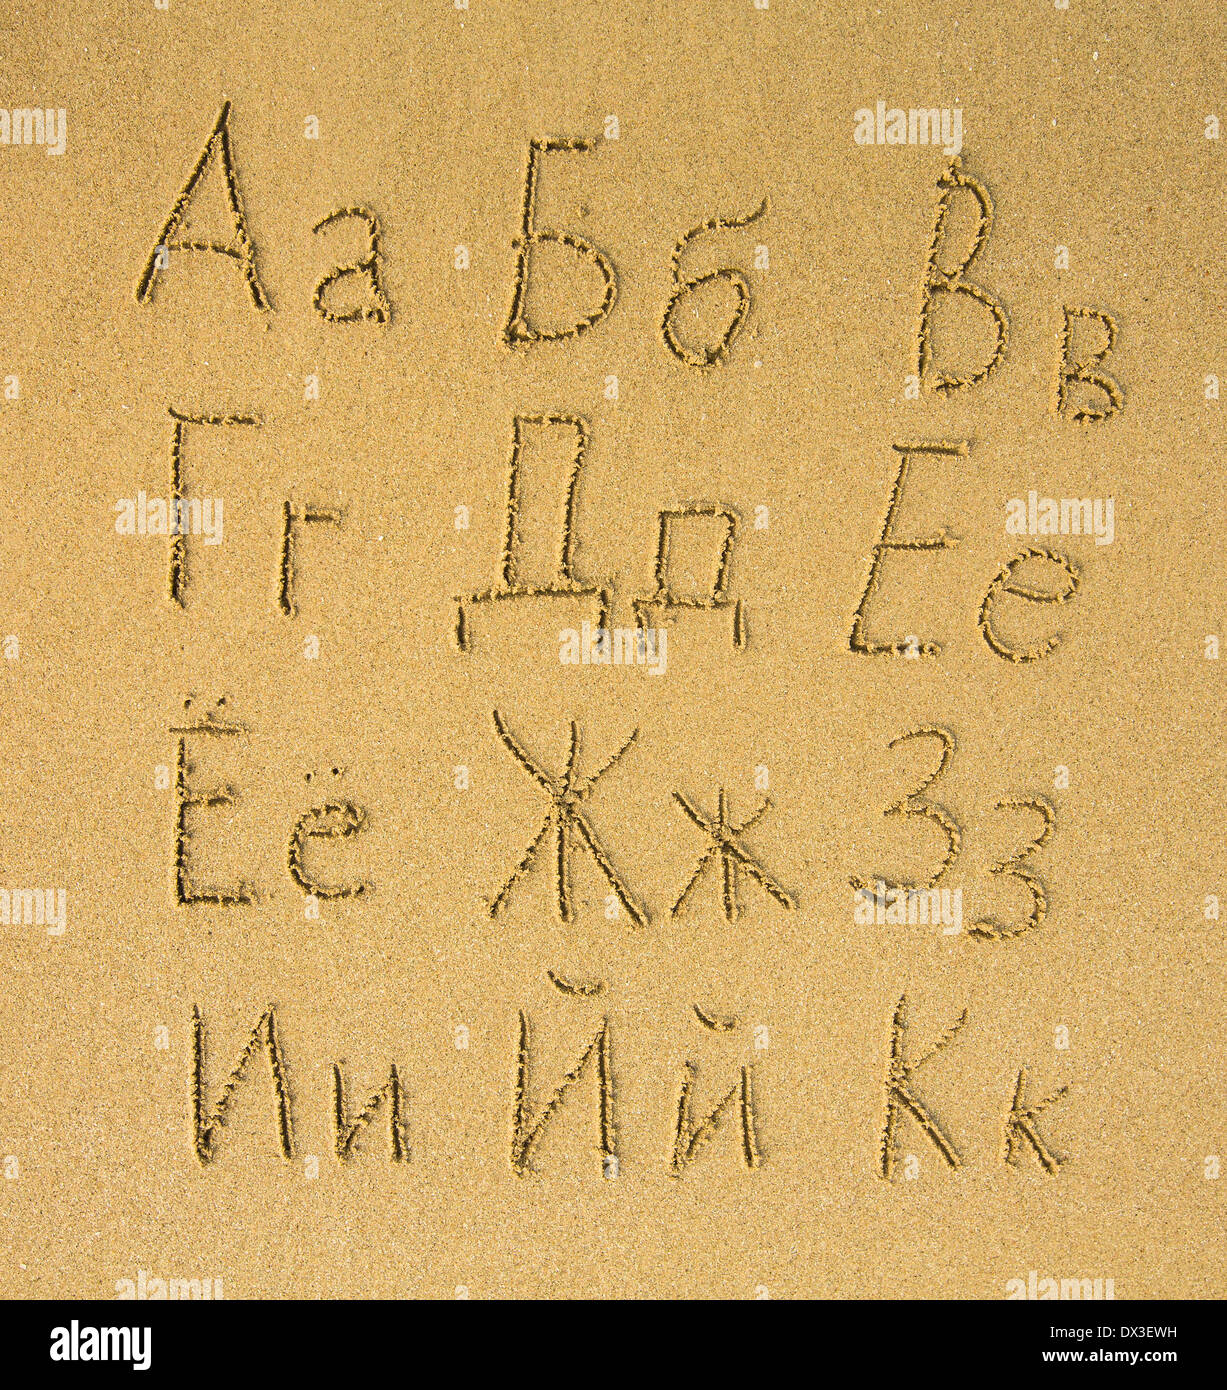 Russian alphabet (first part of three) written on a sand beach. Stock Photo